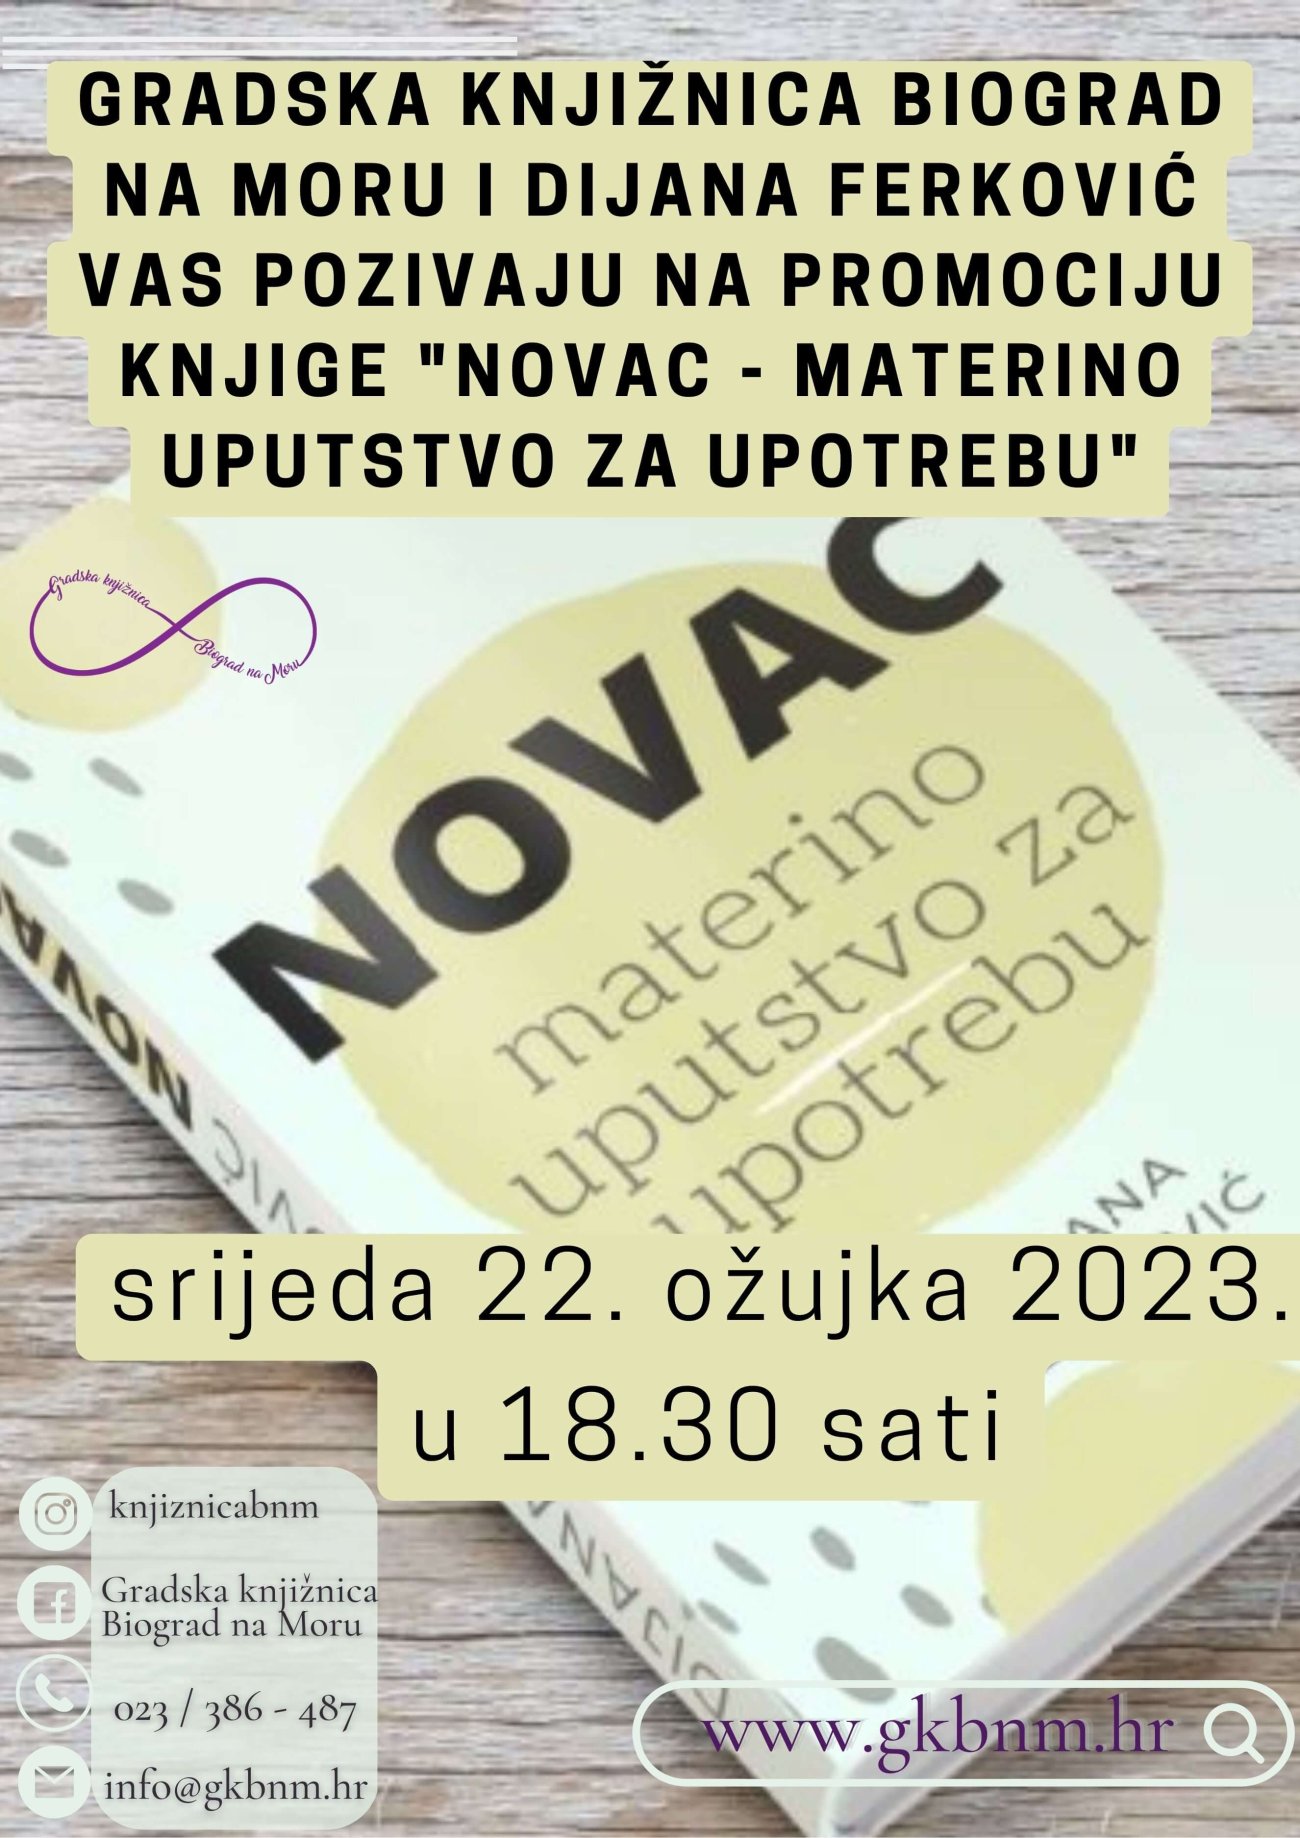 Gradska knjižnica Biograd na Moru i Dijana Ferković vas pozivaju na promociju knjige &quot;Novac-materino uputstvo za upotrebu&quot;